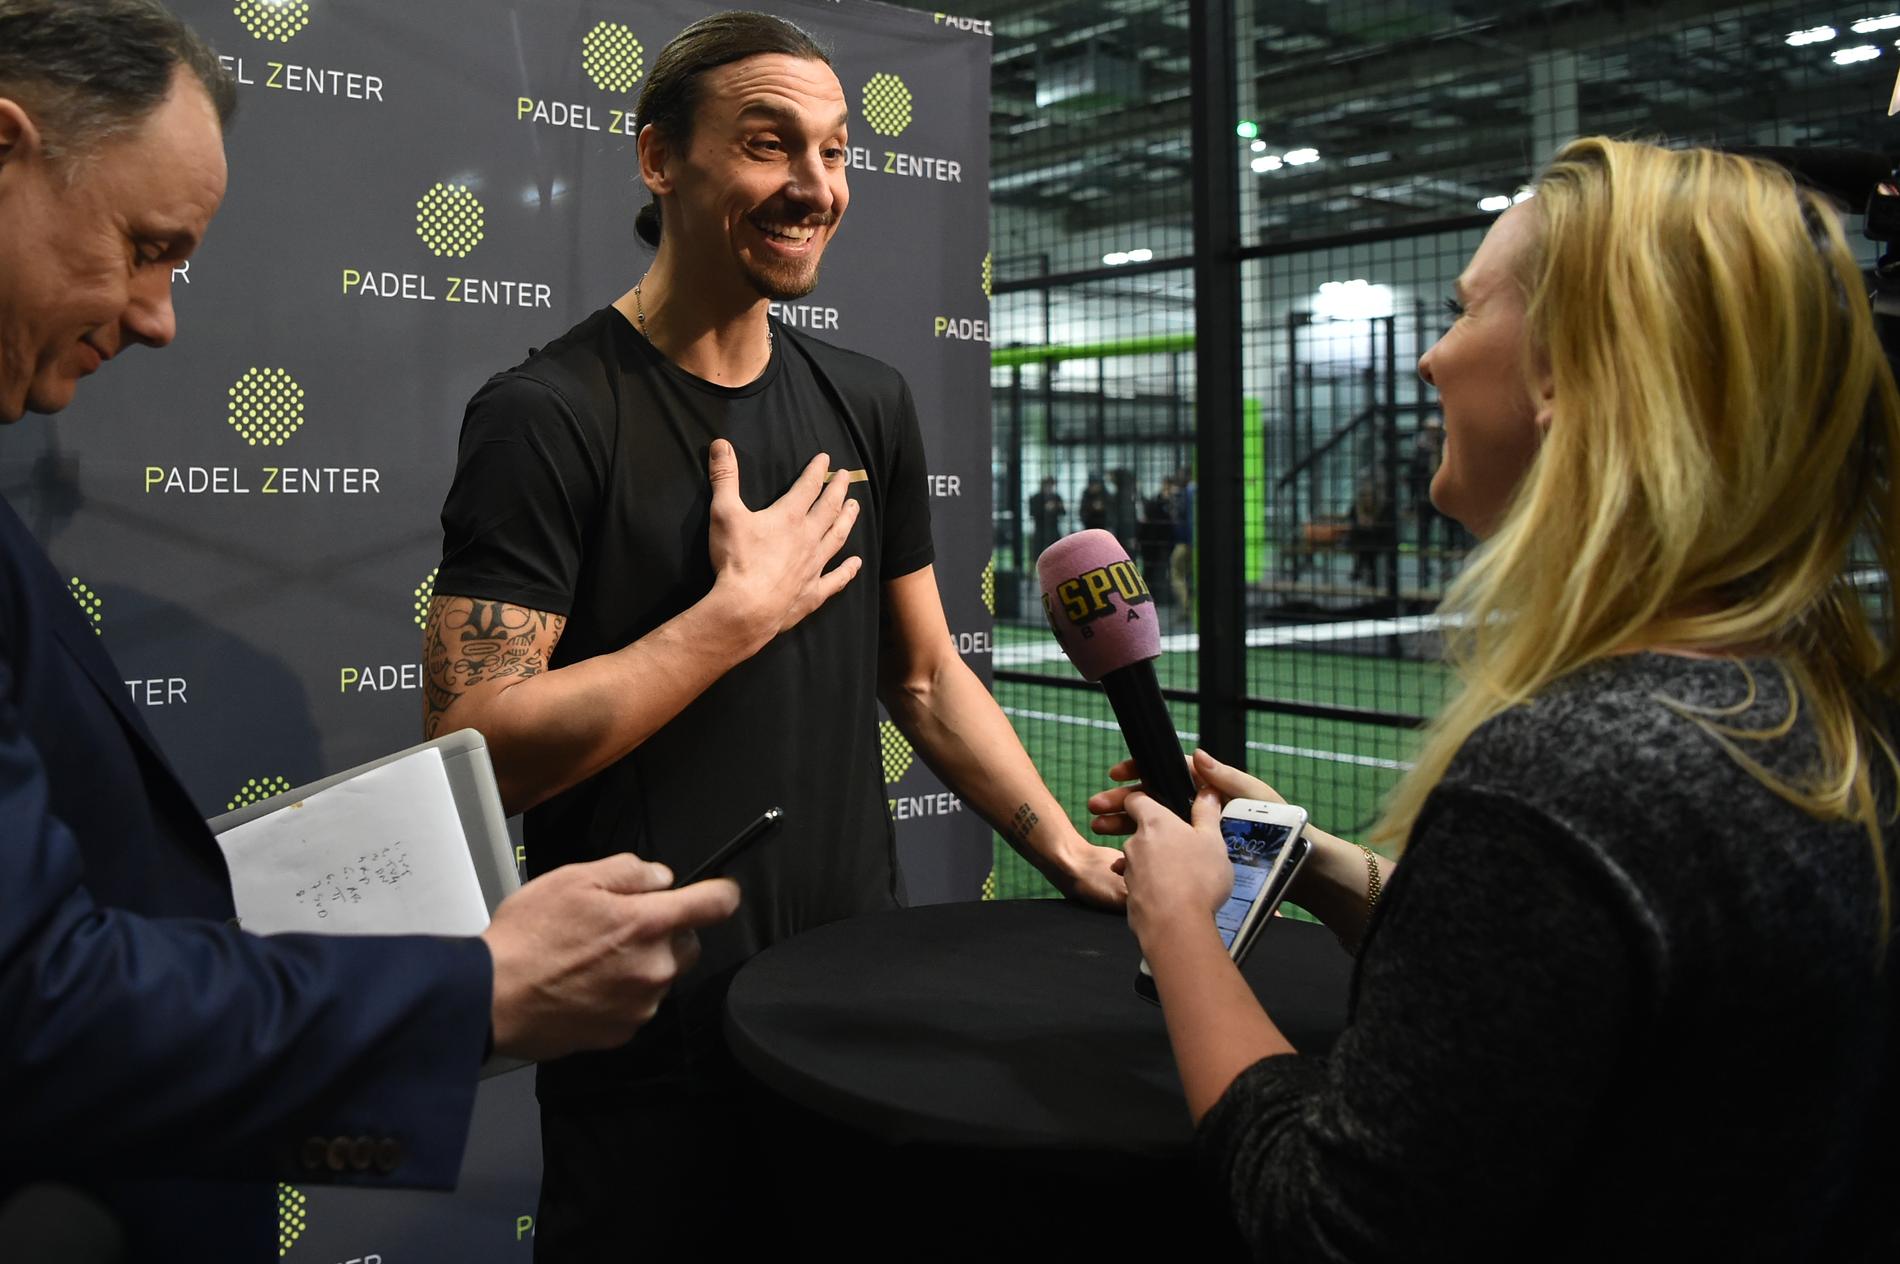 Zlatan intervjuas av Sportbladets Frida Fagerlund sin nya padelhall. 